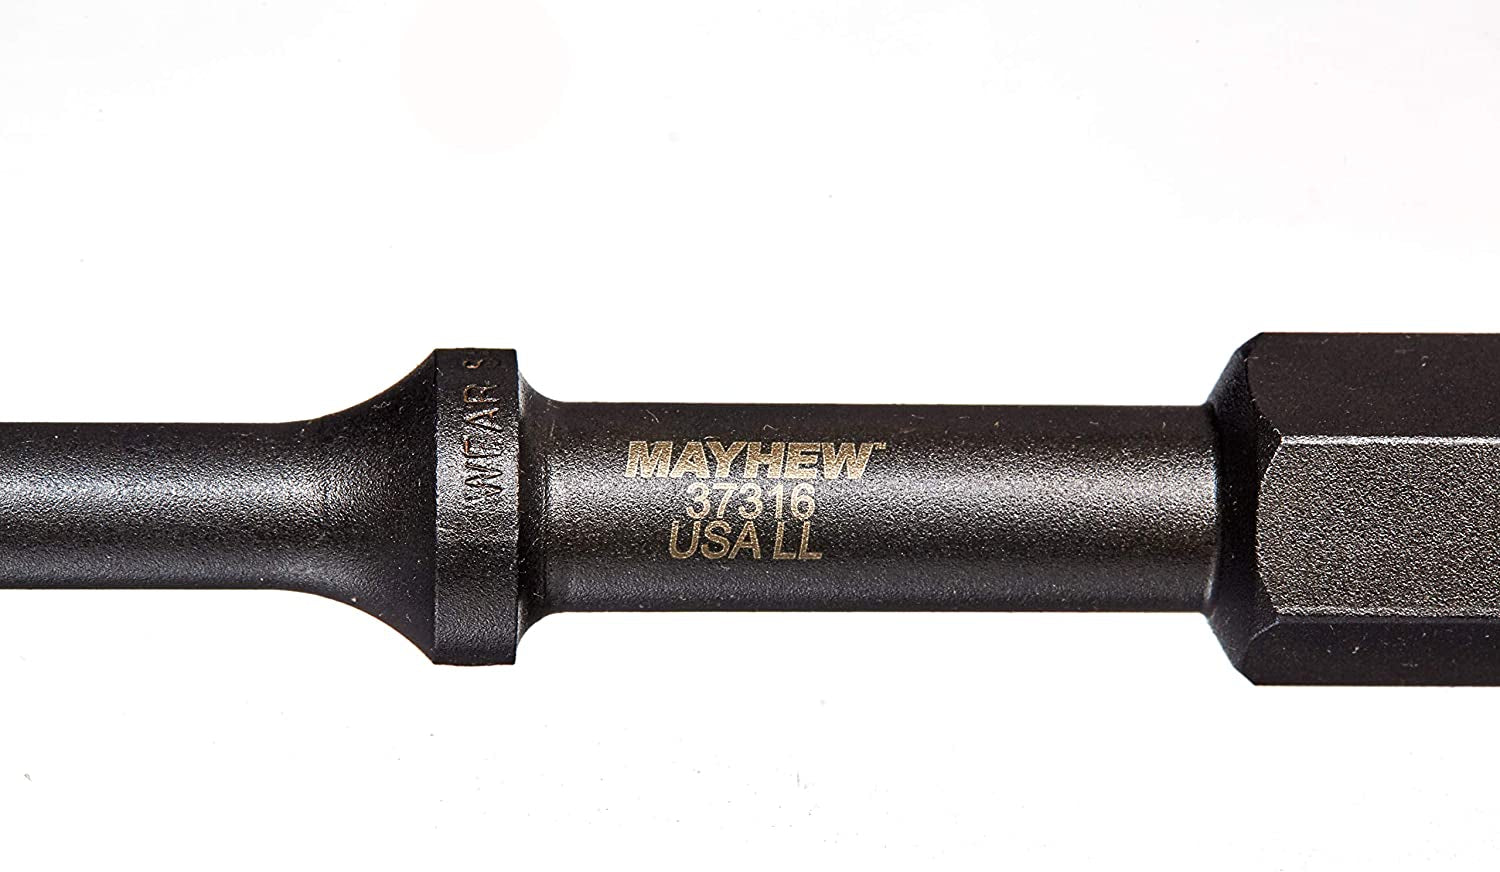 Mayhew, Mayhew Pro 37316 1/2-Inch Shake 'N Break Pneumatic Bolt Breaker